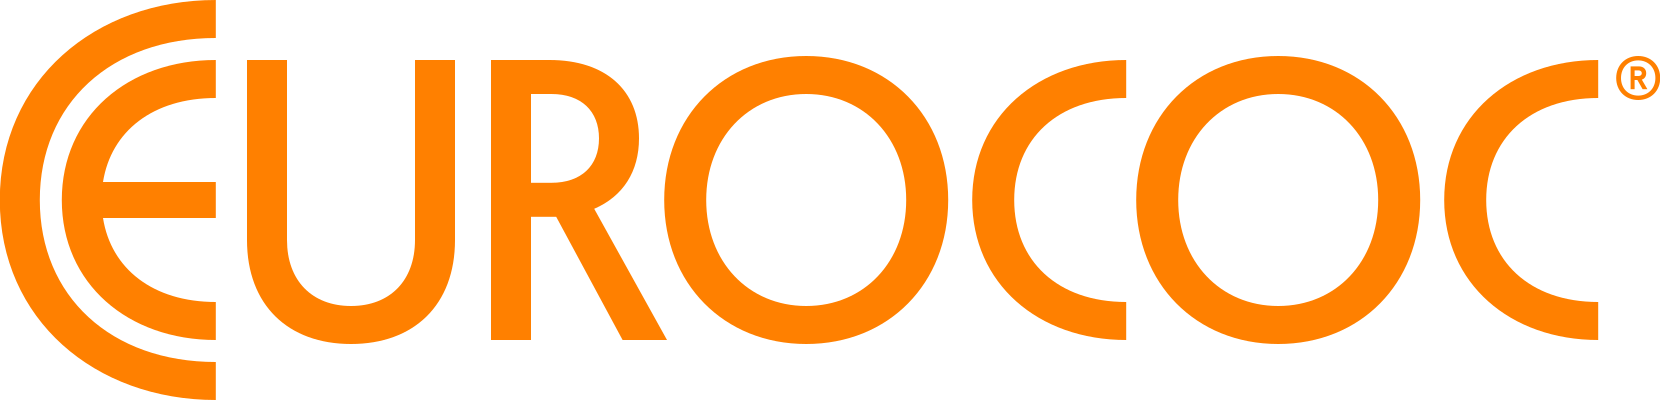 coc logo